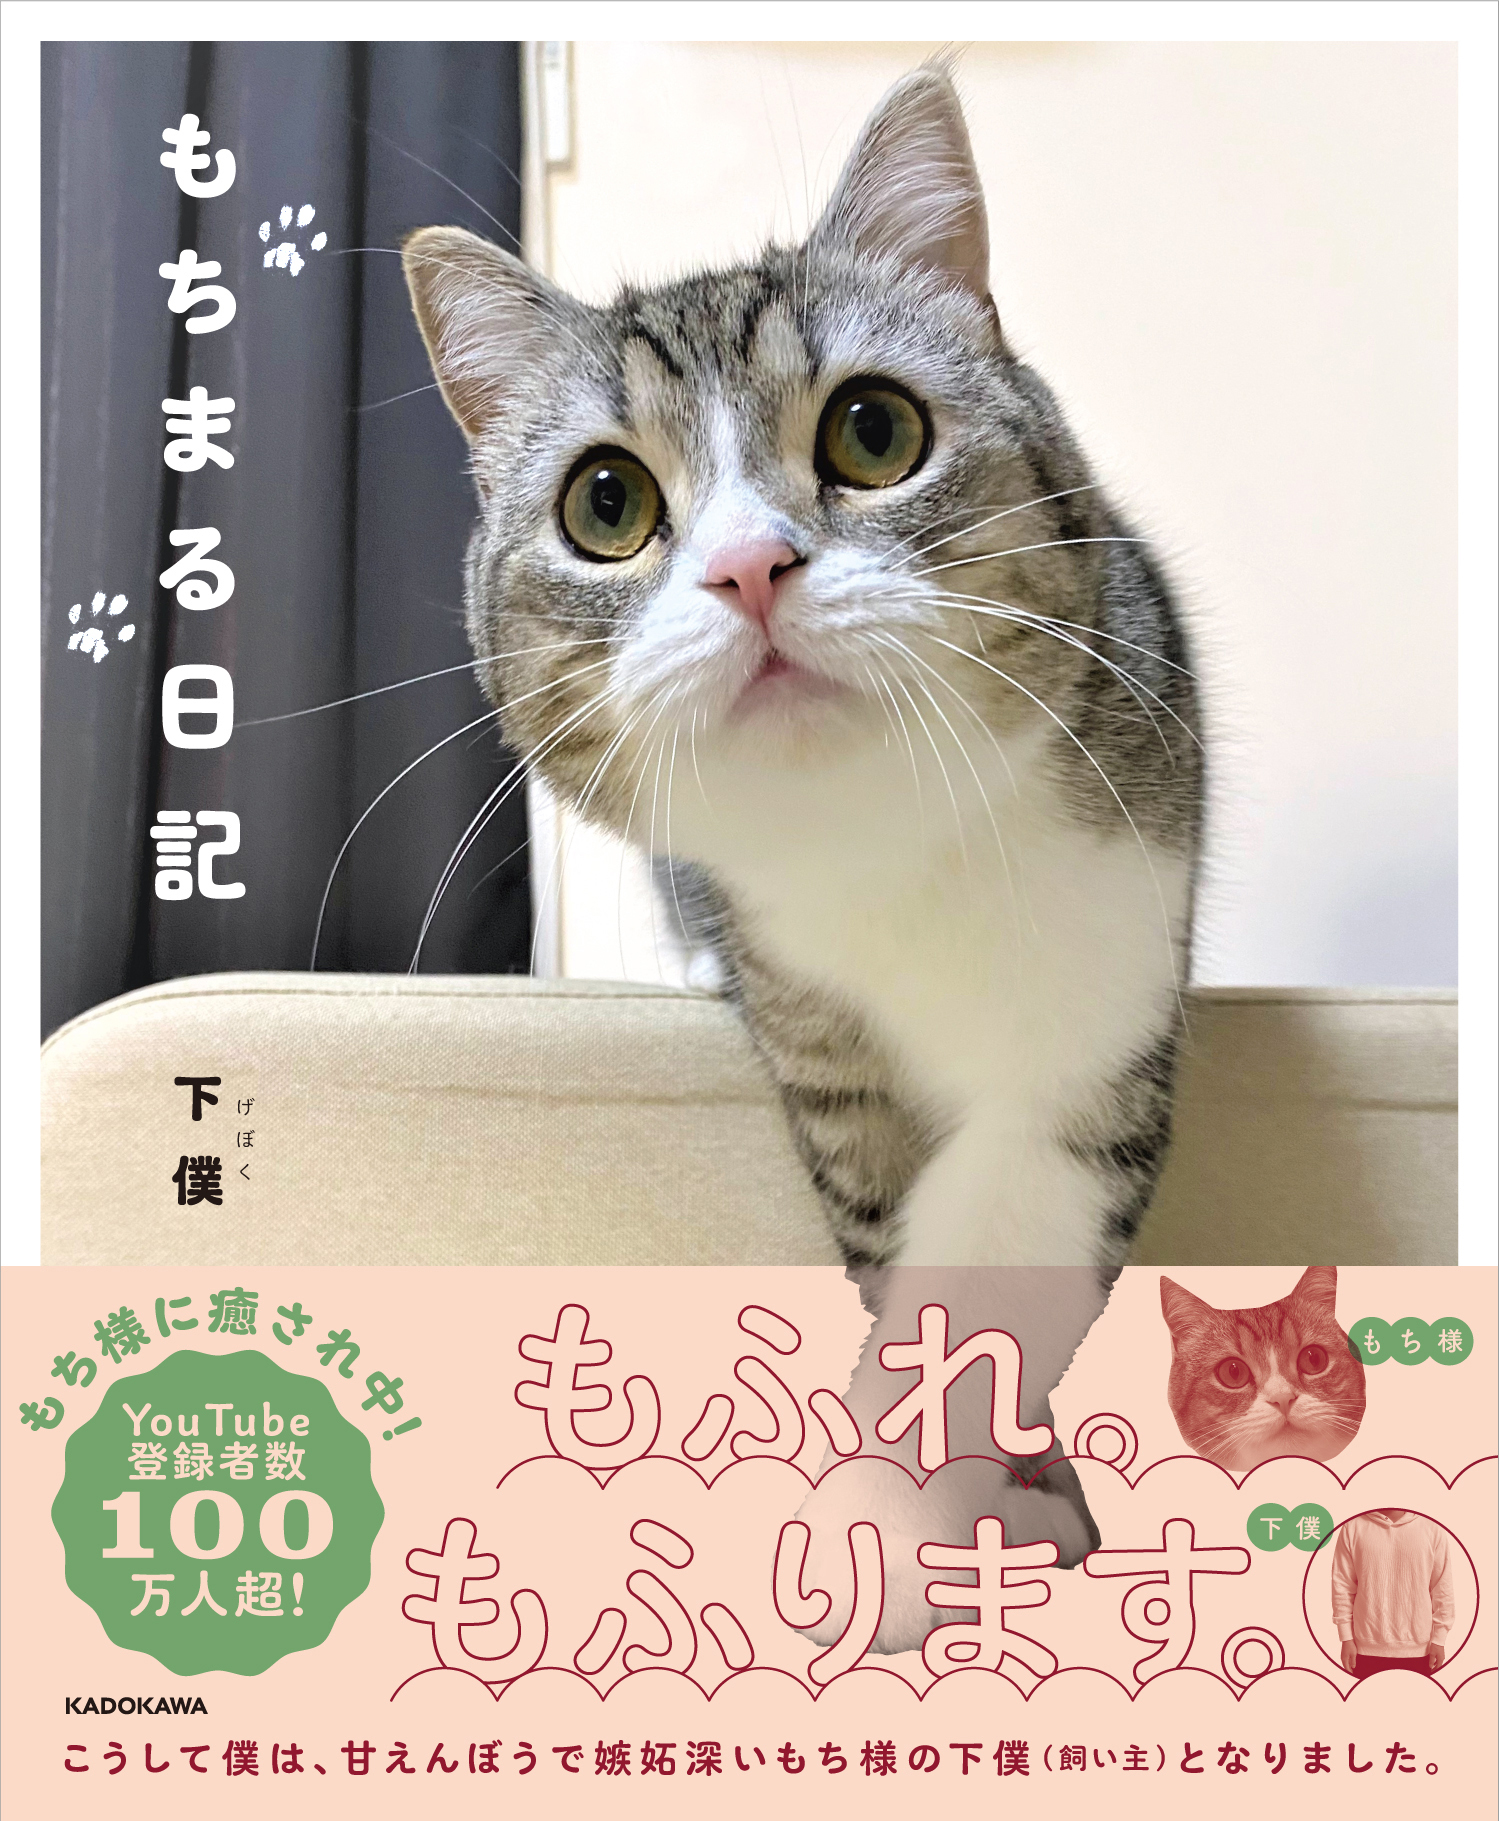 猫の“もち様”フォトブック『もちまる日記』が発売1週間で重版決定 